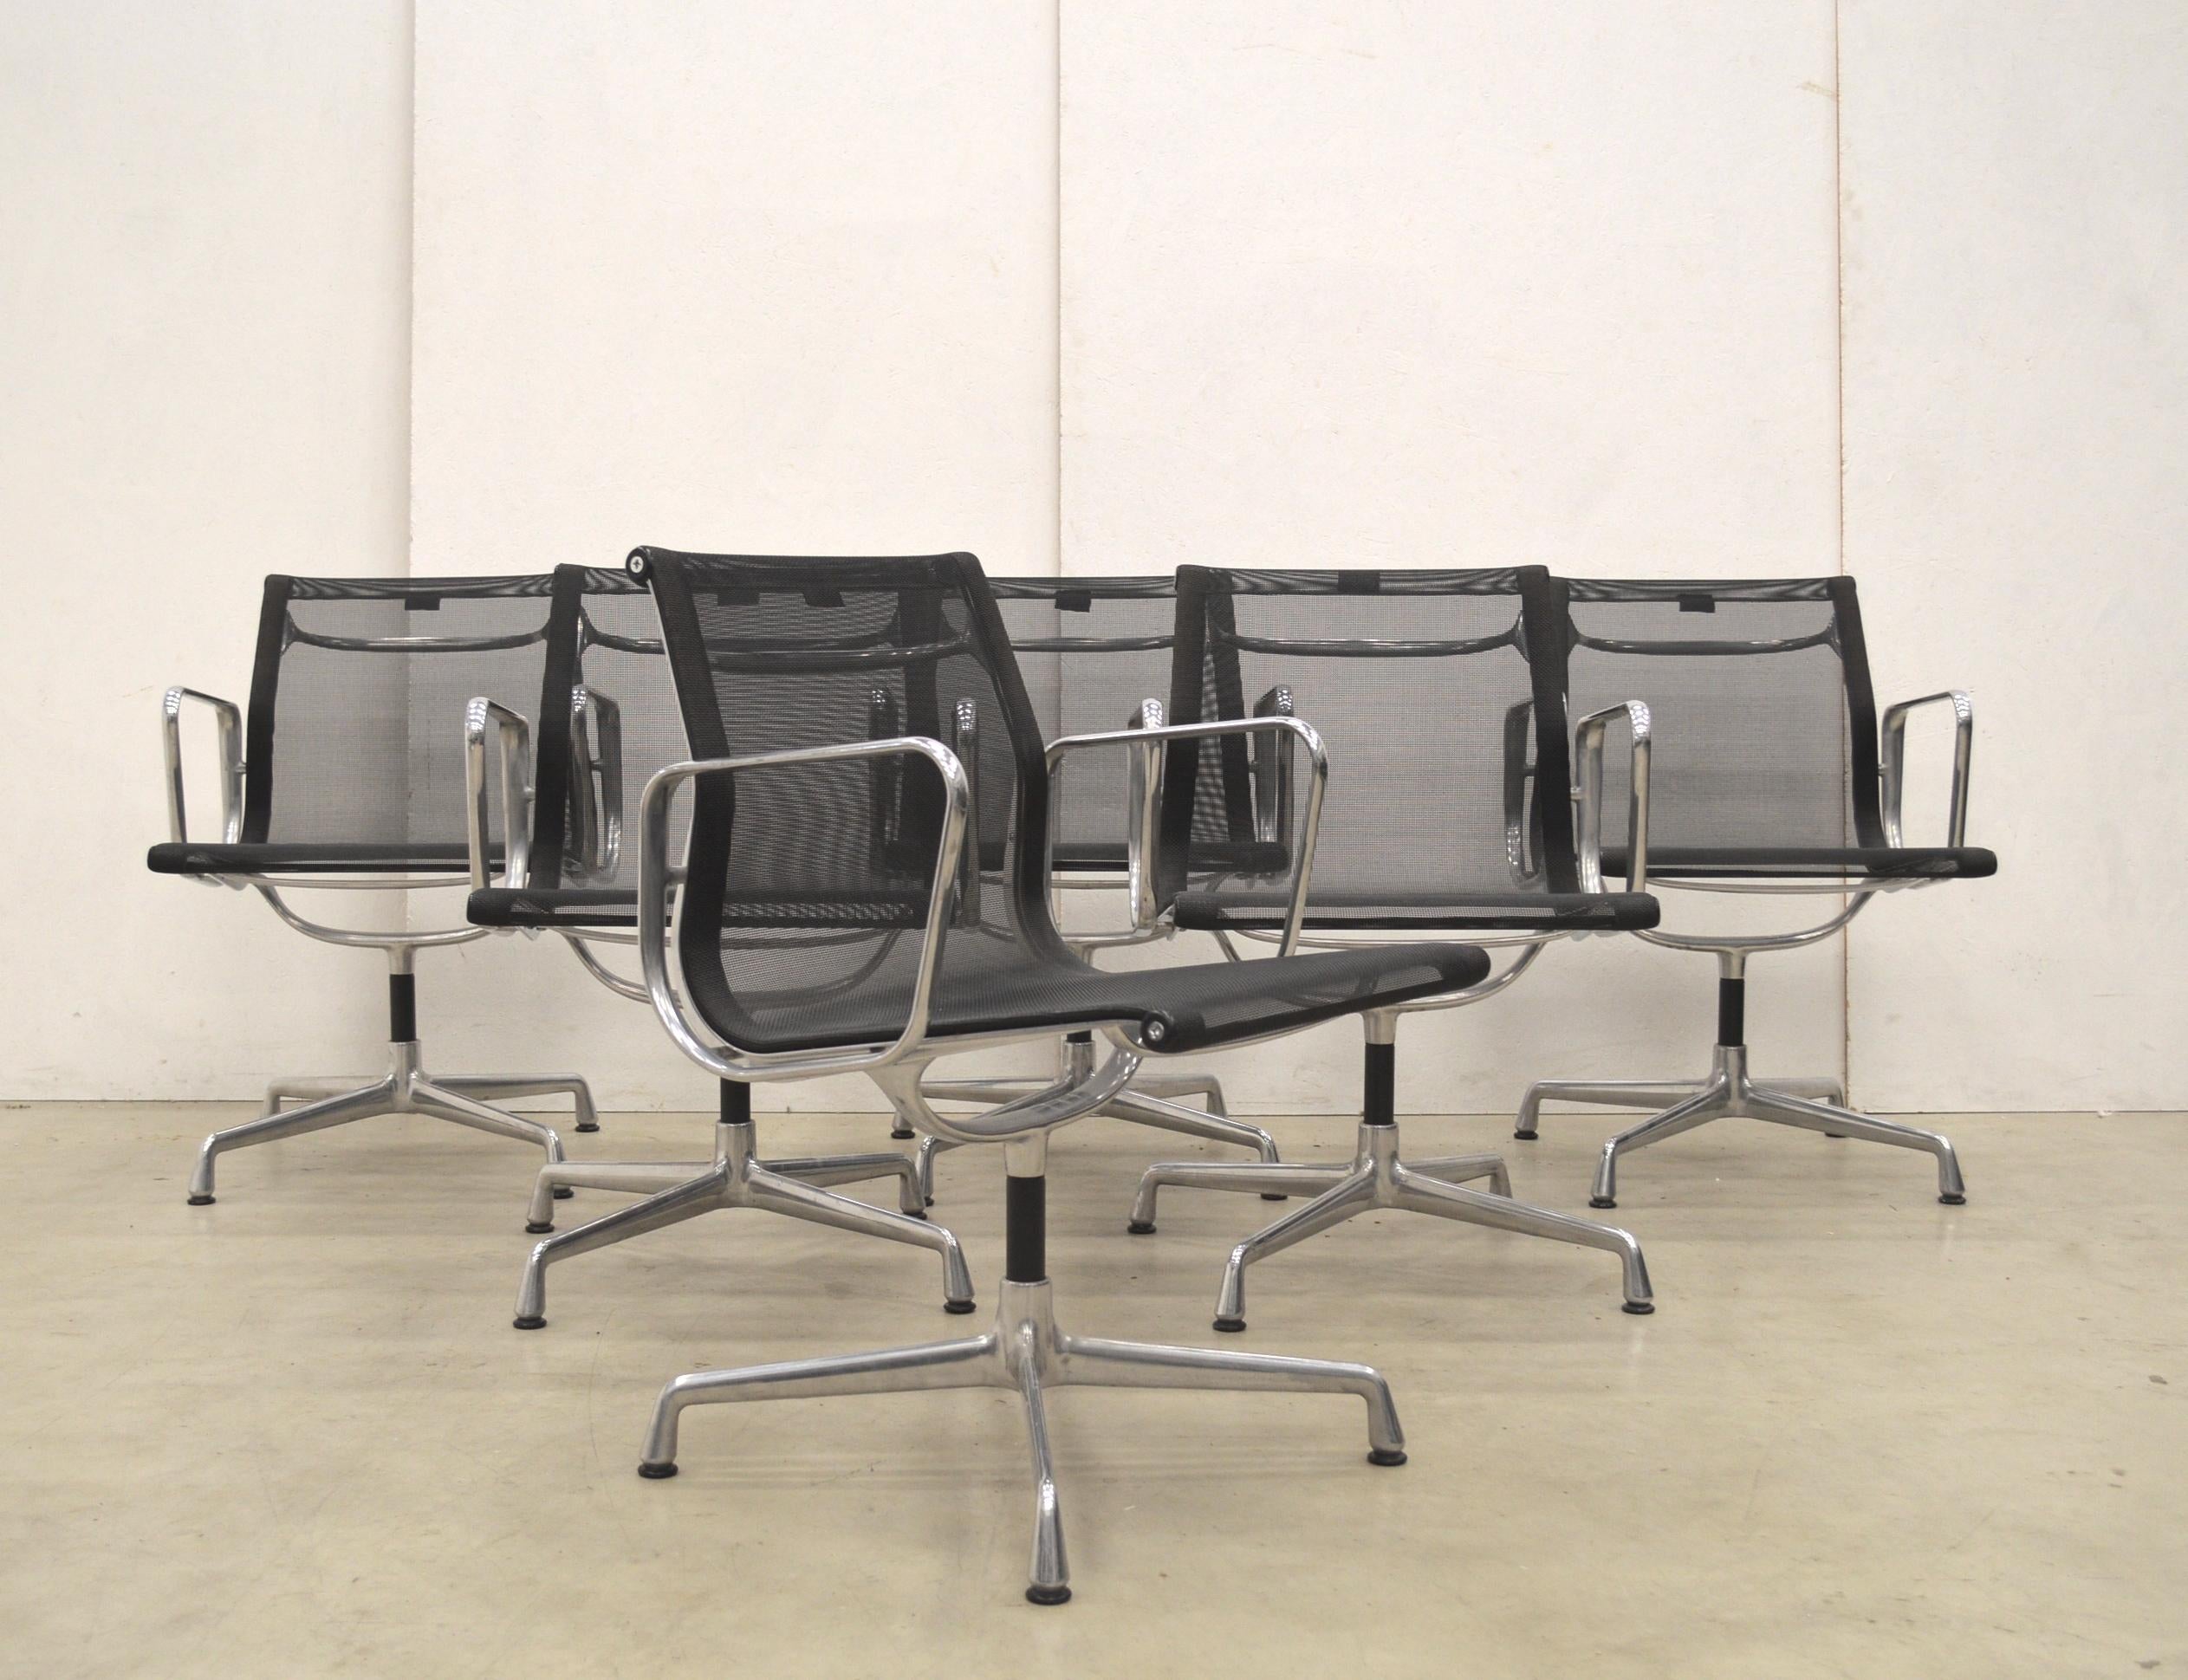 Ensemble de 8 chaises Nicwe en tissu noir modèle EA108 produit par Vitra. Les chaises sont dotées d'un cadre en aluminium poli et sont toutes fabriquées en 2014.

L'ensemble est parfaitement utilisable dans une salle à manger ou une salle de